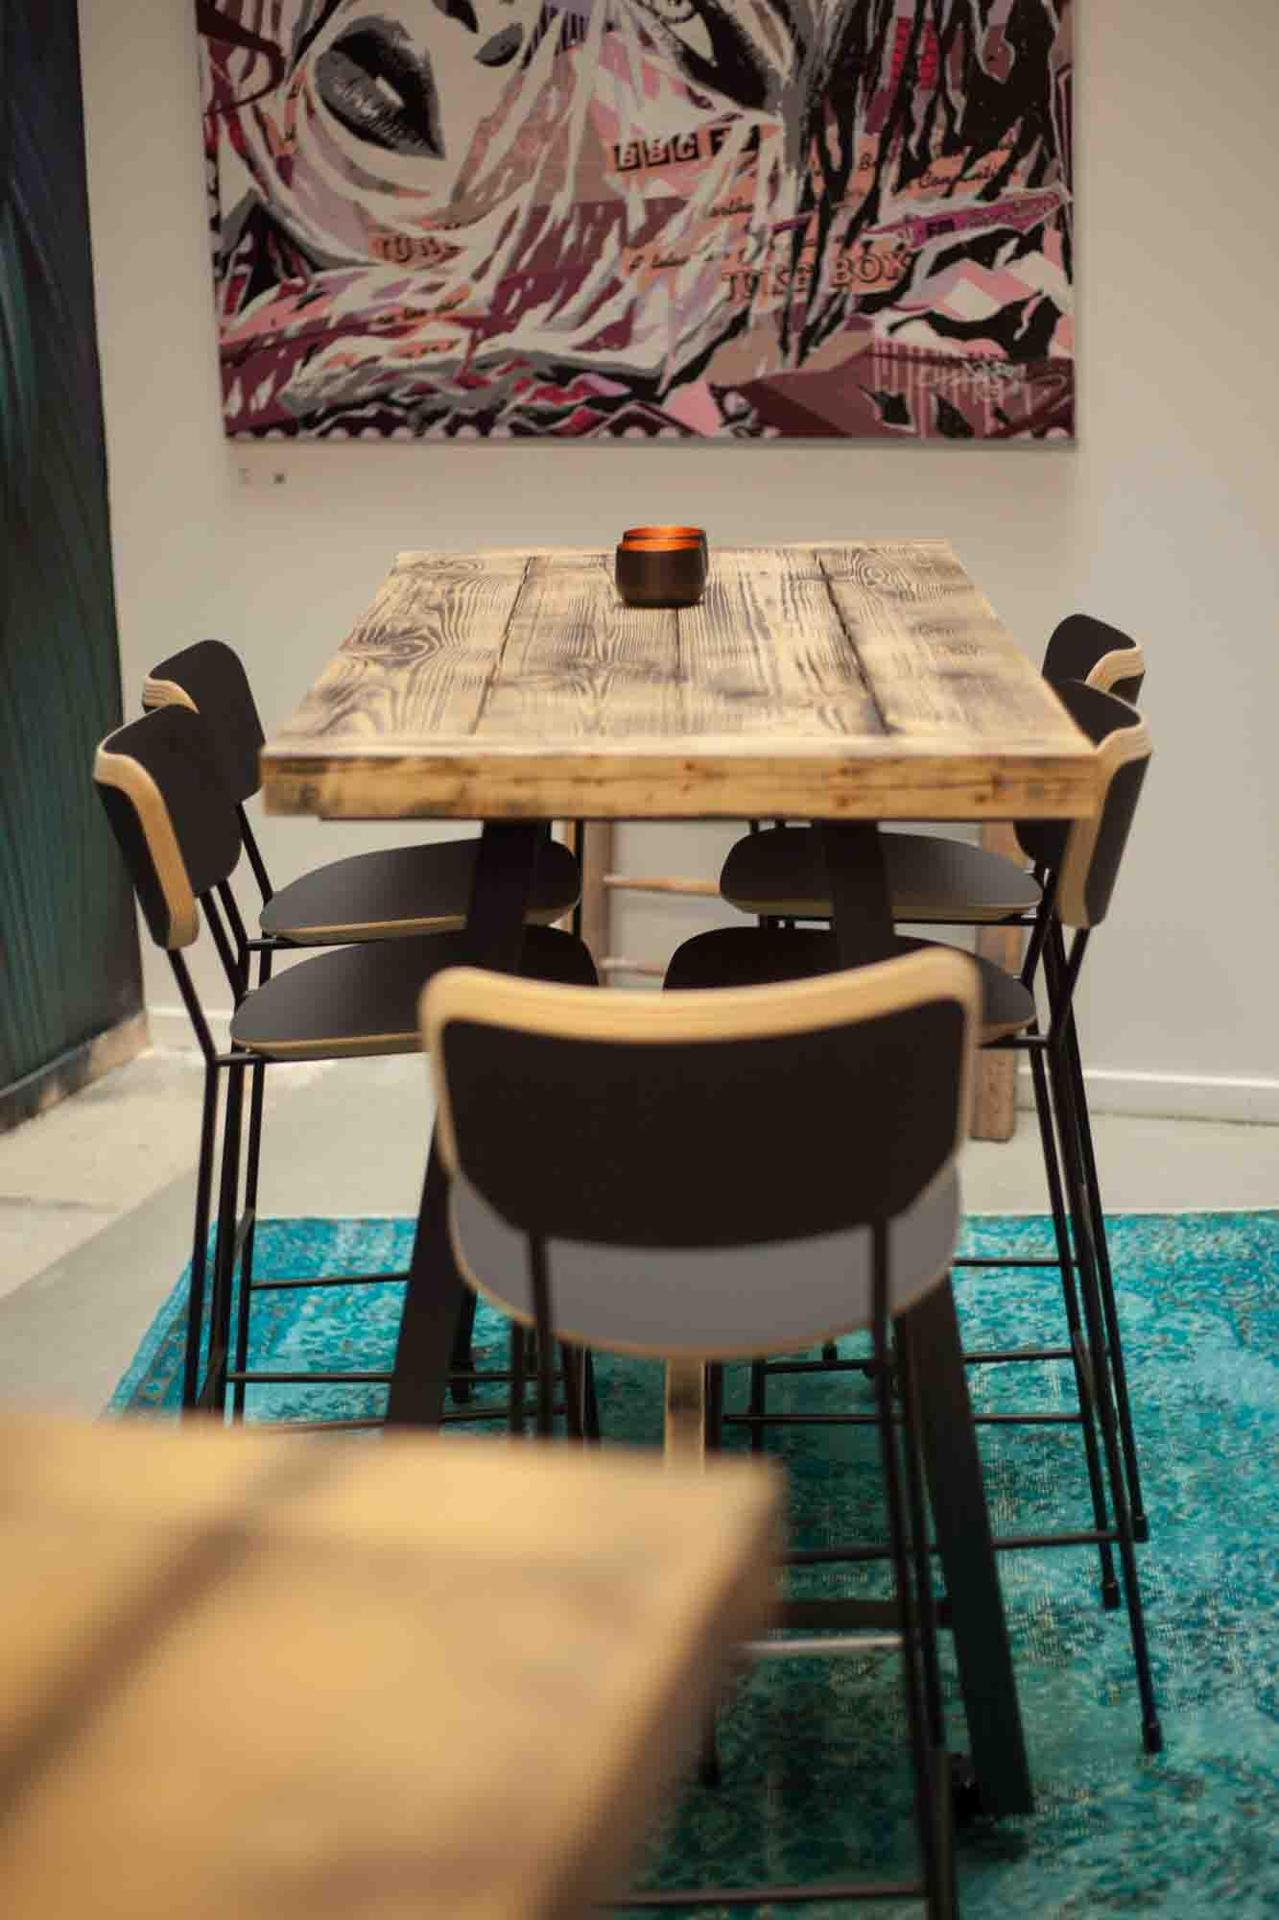 Aménagement sur-mesure Le Shack par FOR ME LAB, un tiers-lieu unique, au concept innovant et moderne. Réalisations de tables sur-mesure au look authentique, en parfait accord avec sa décoration chaleureuse et conviviale.